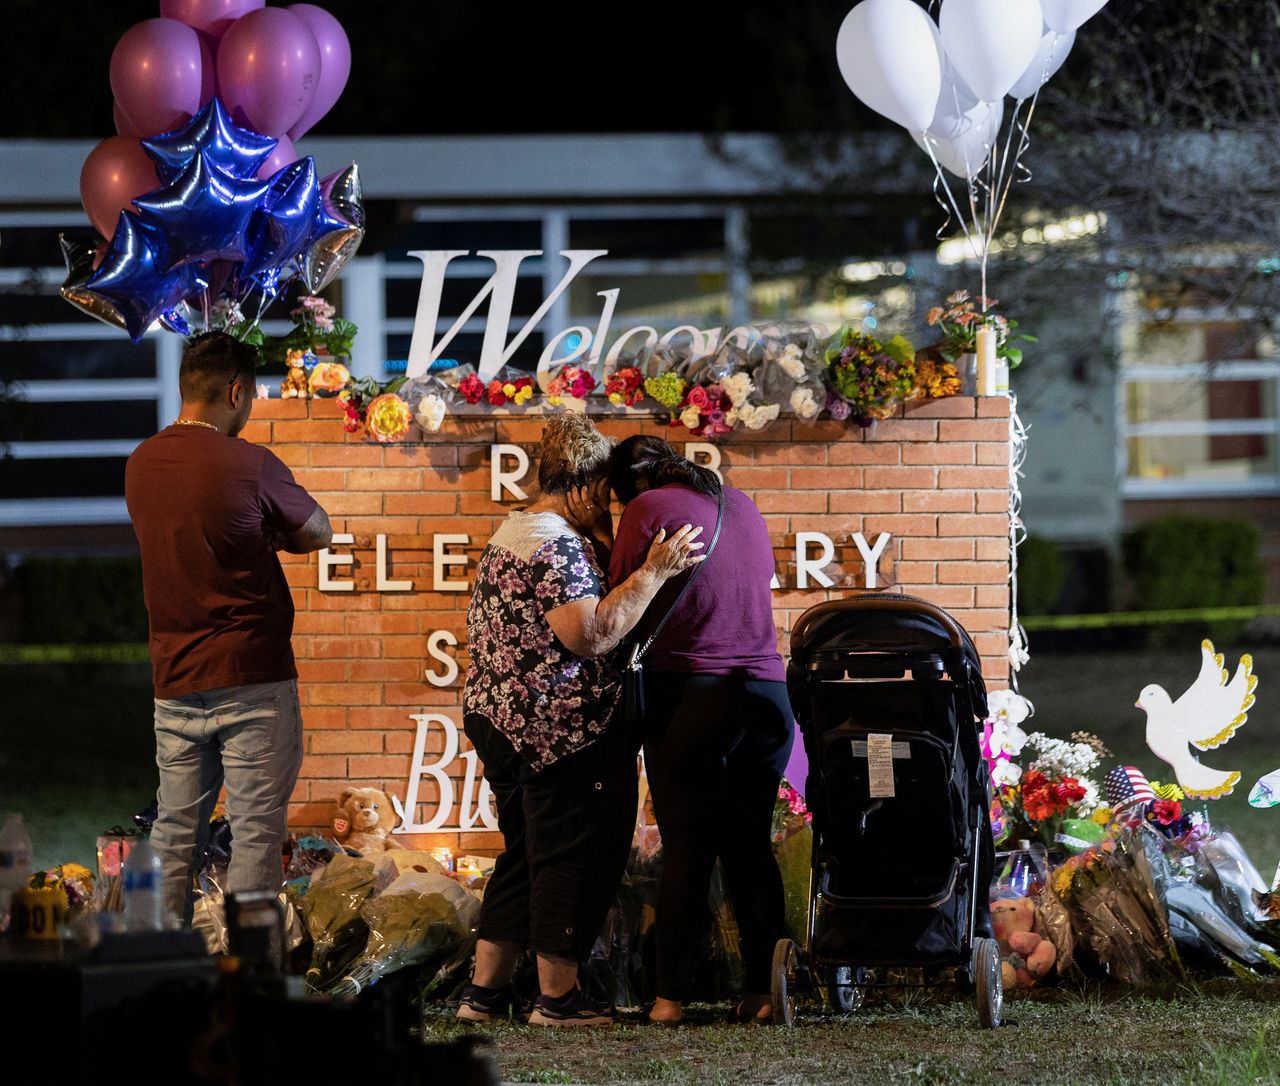 Mensen troosten elkaar bij de gedenkplaats voor de 21 slachtoffers die een 18-jarige schutter vorige maand maakte op een basisschool in Uvalde, Texas.